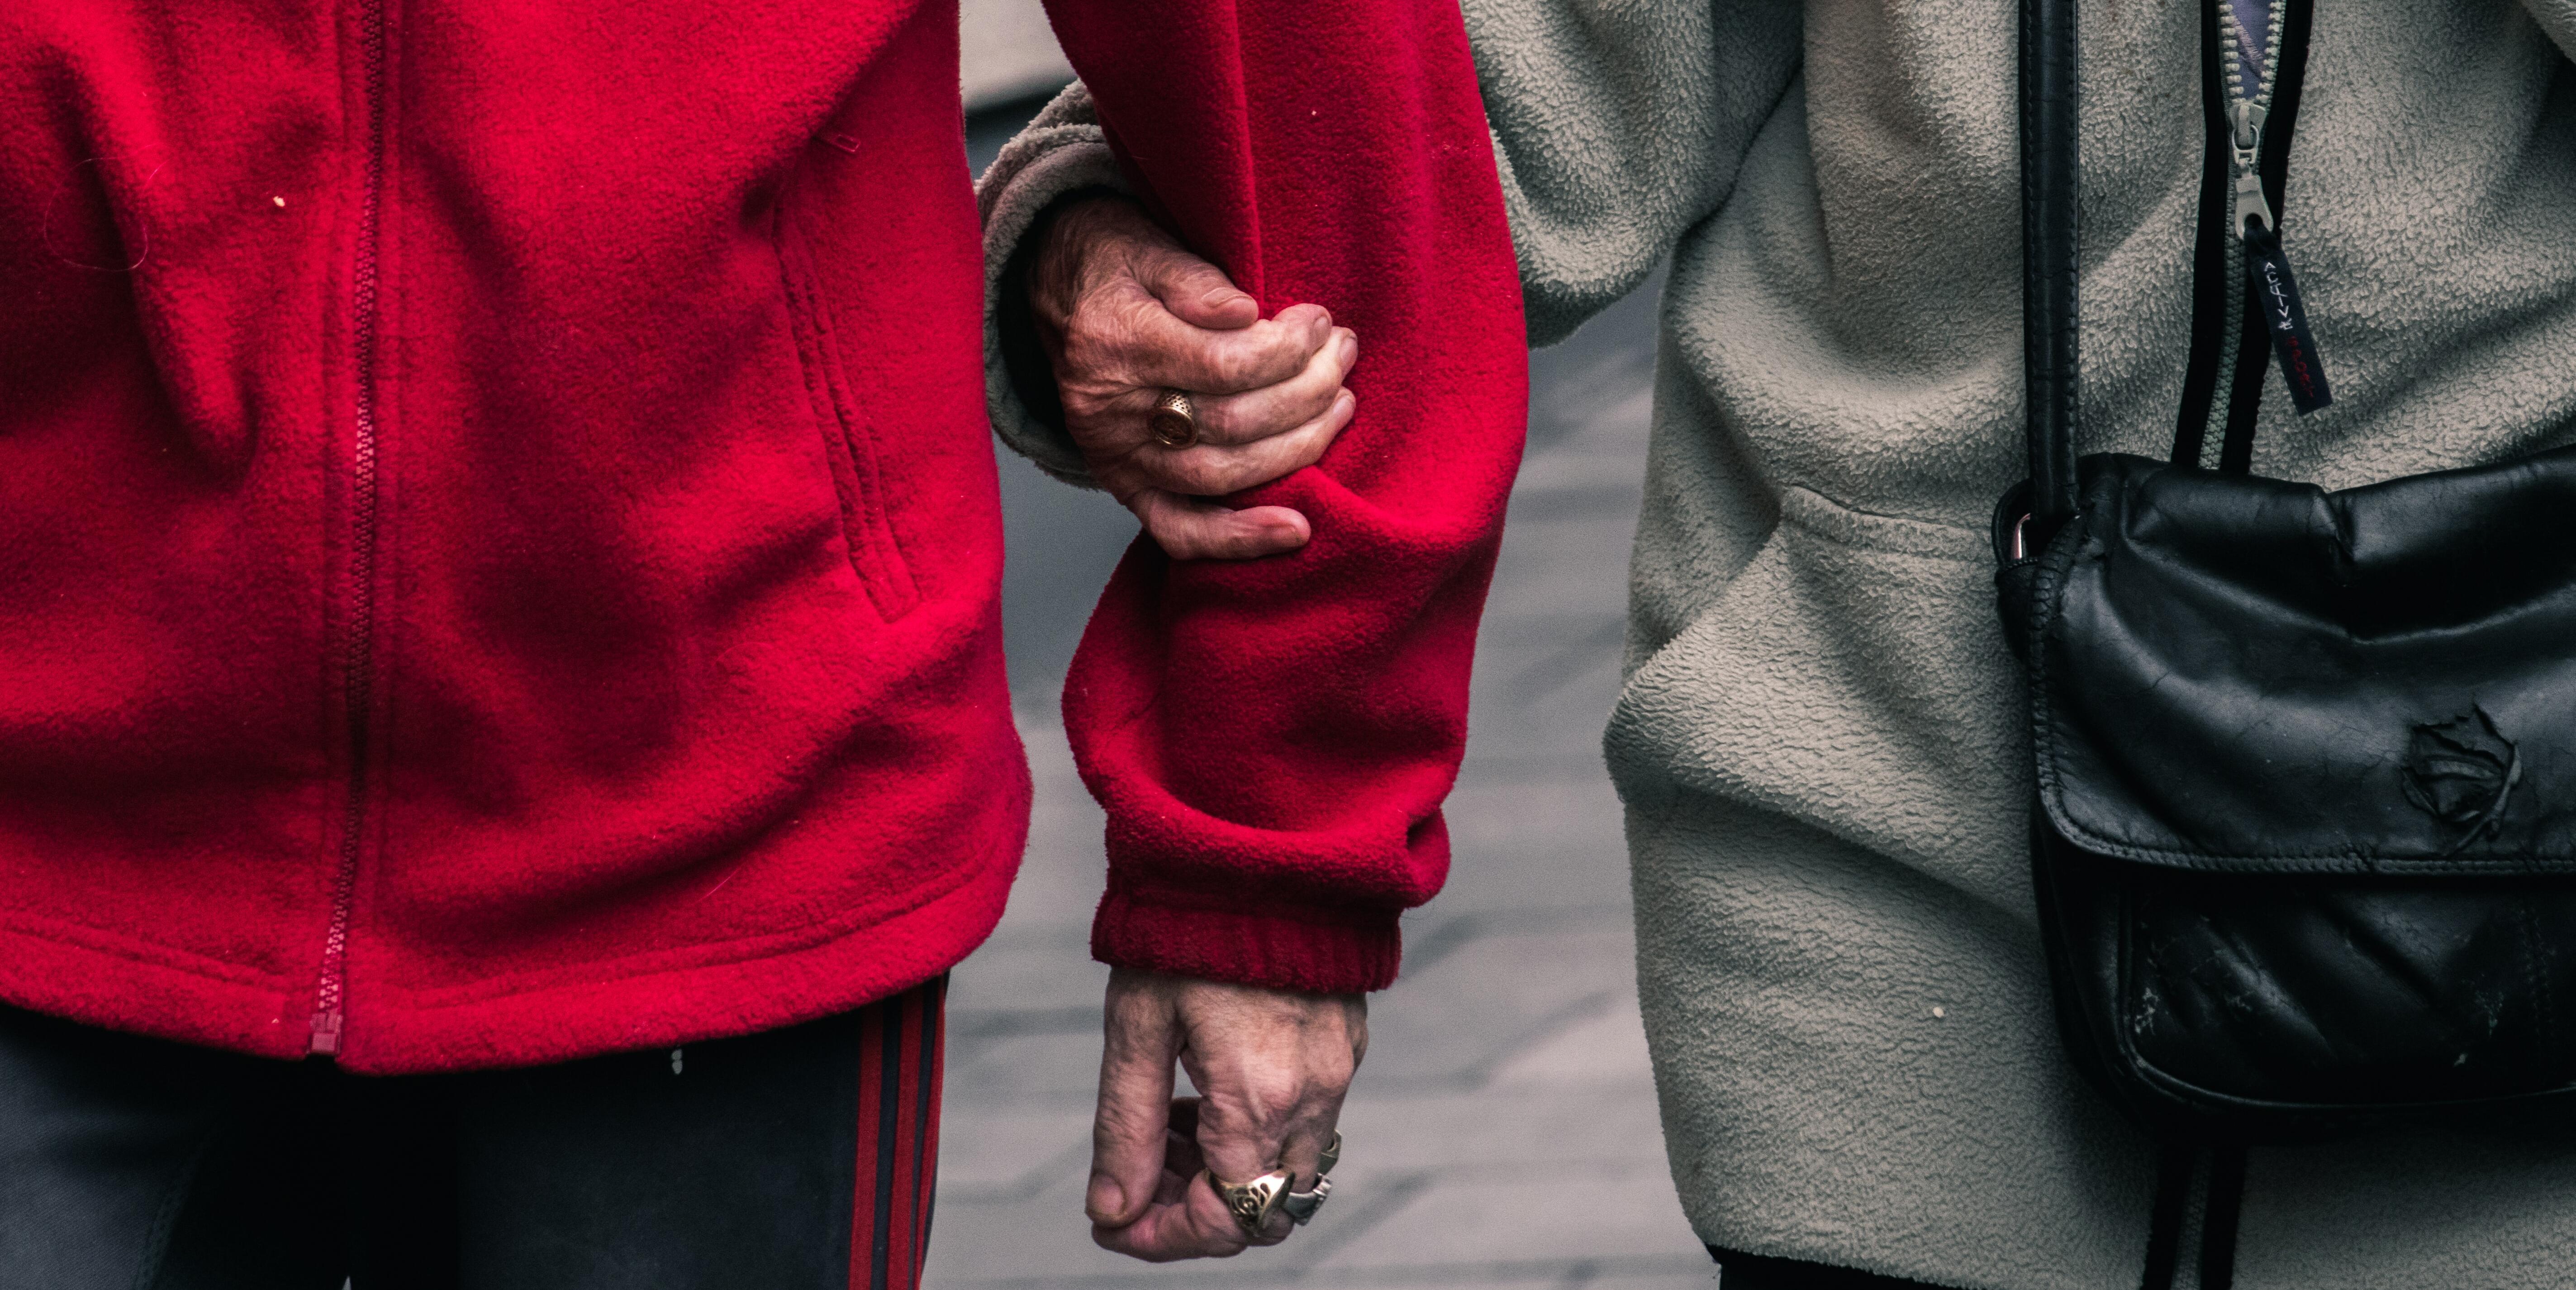 Imatge dues persones grans agafades del braç al carrer